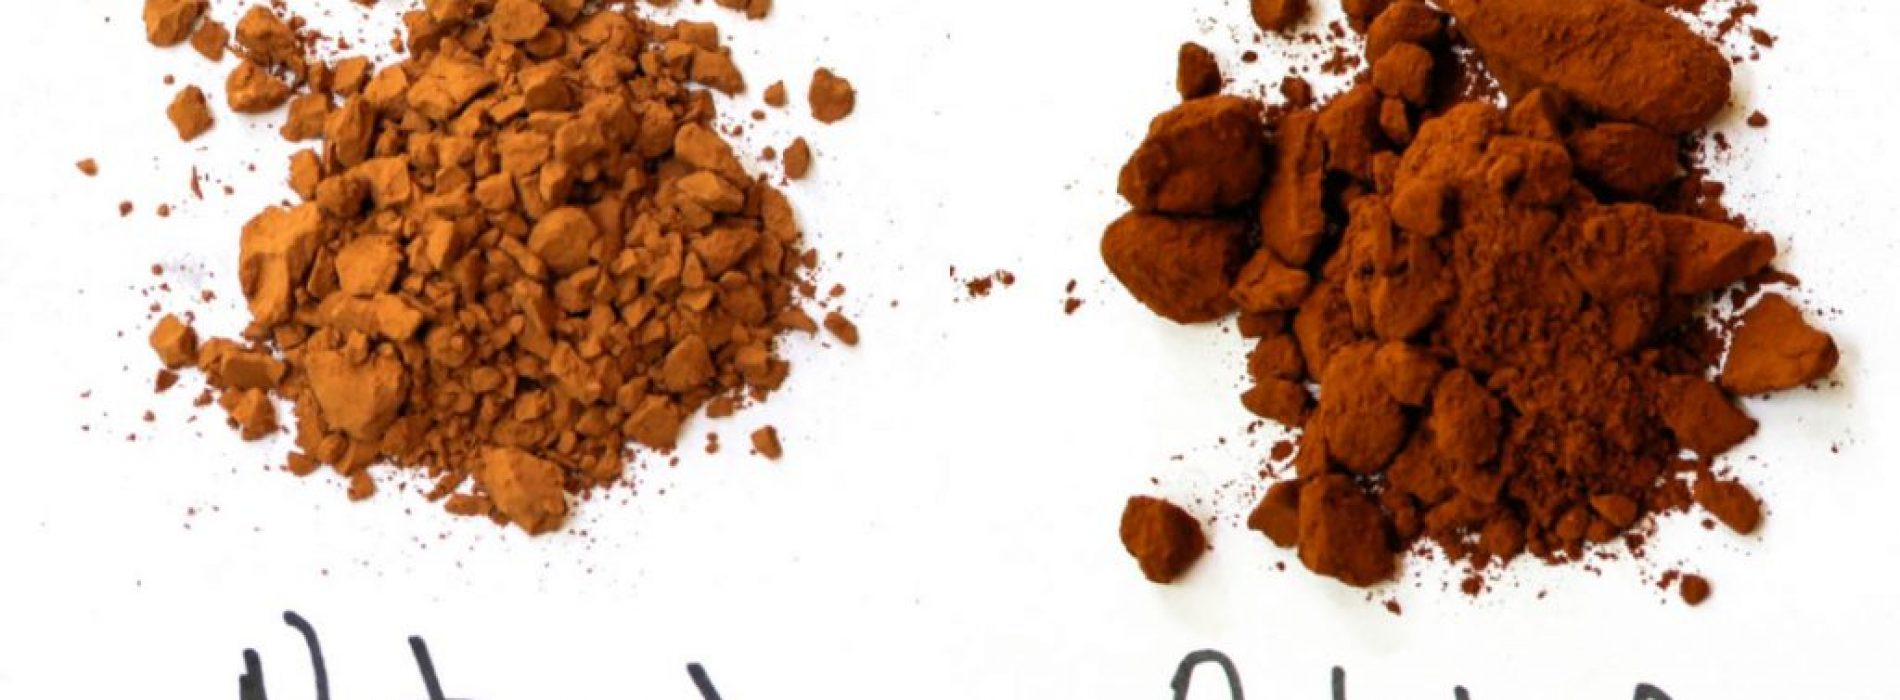 De voordelen voor de gezondheid van chocolade en cacao(bewezen)